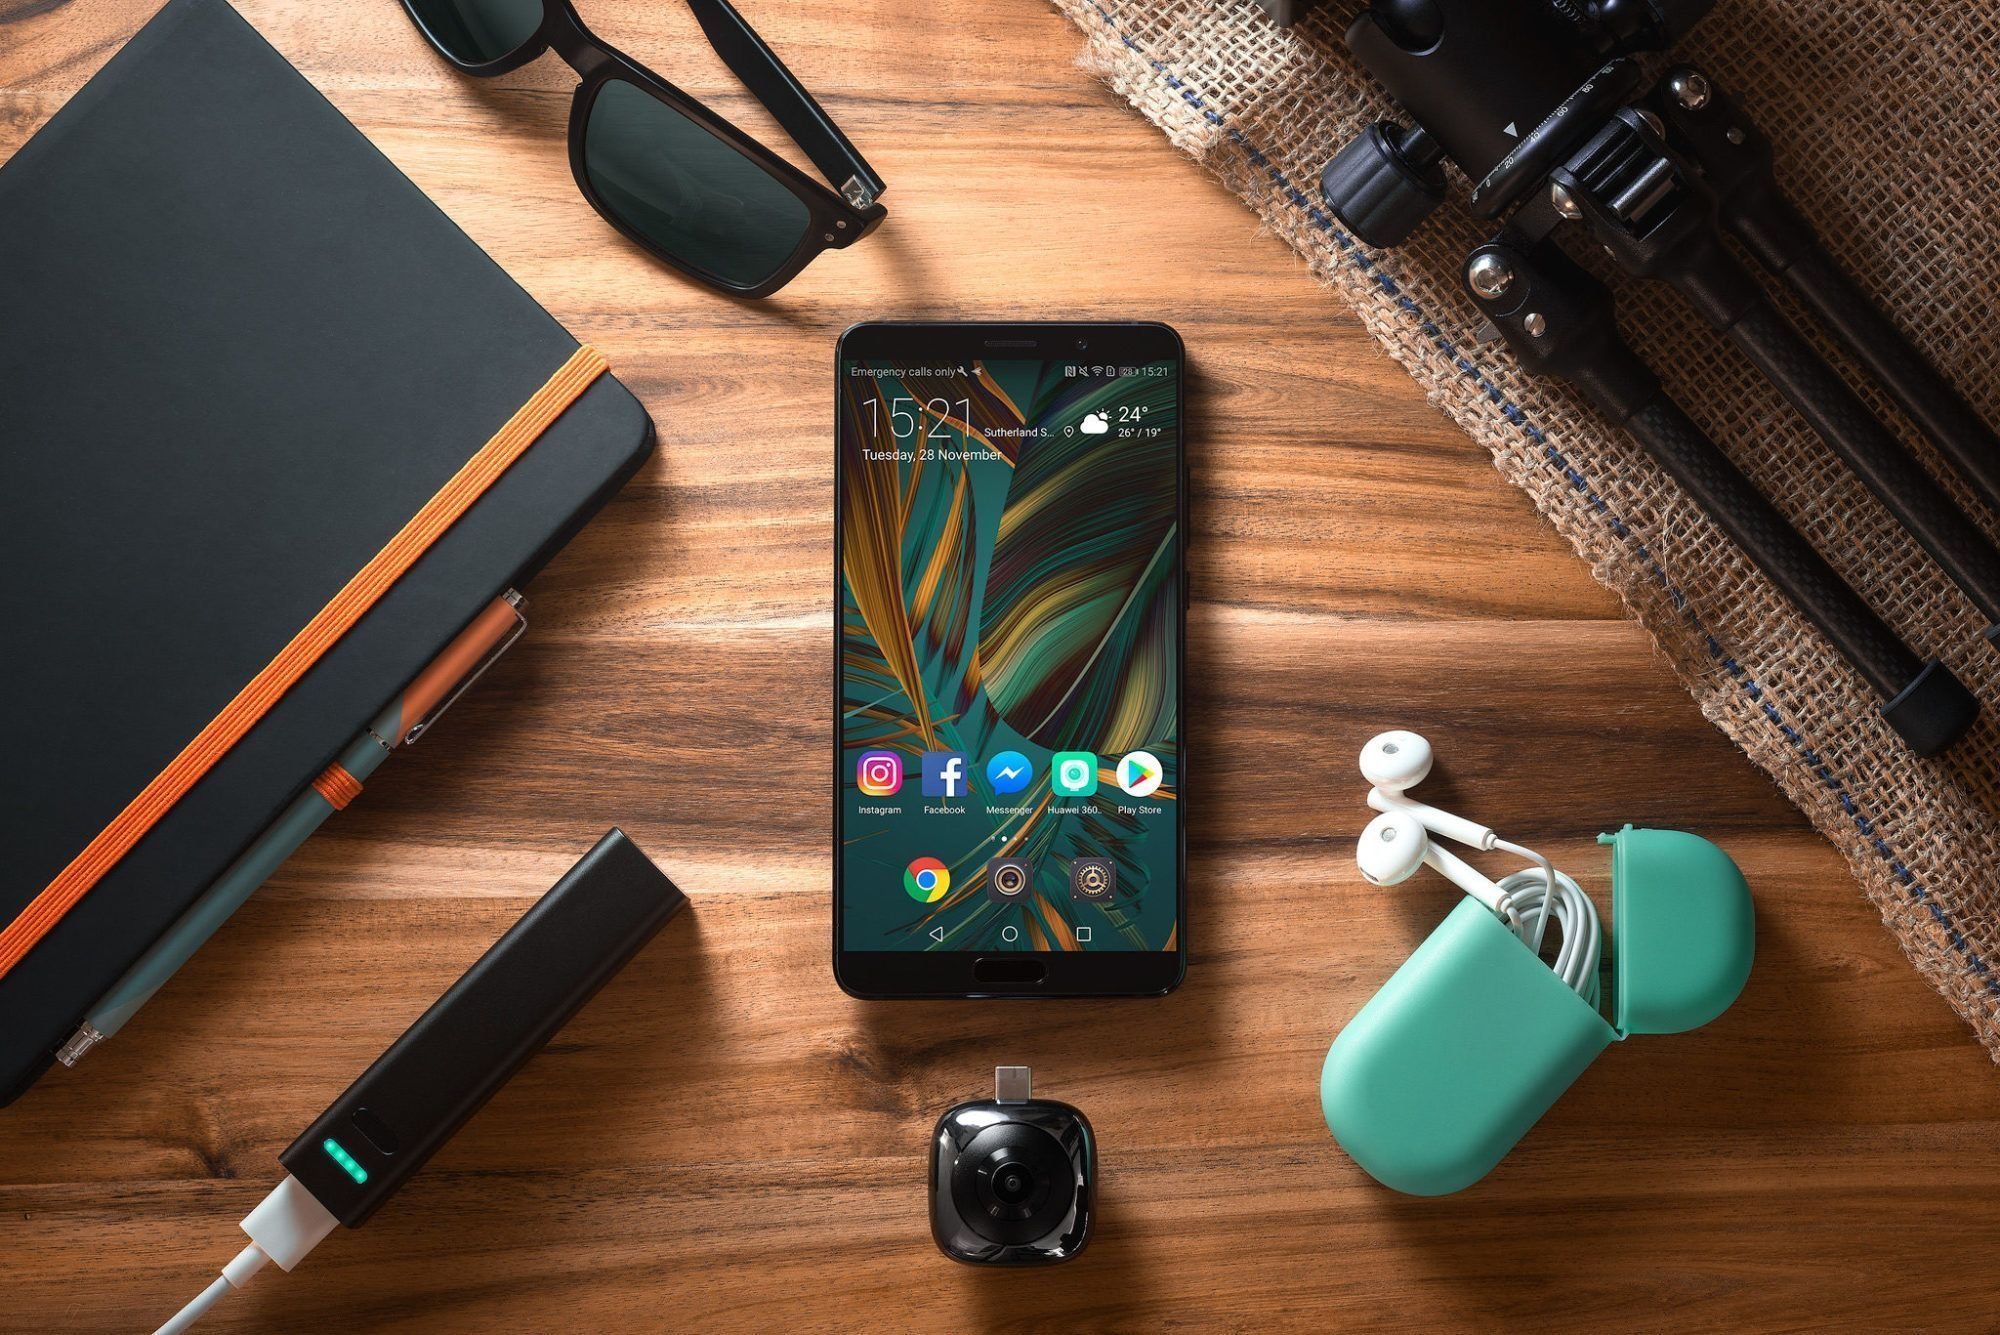 Smartphone Huawei Mate 10 Dual Sim : Un an s'est écoulé, pour résumer